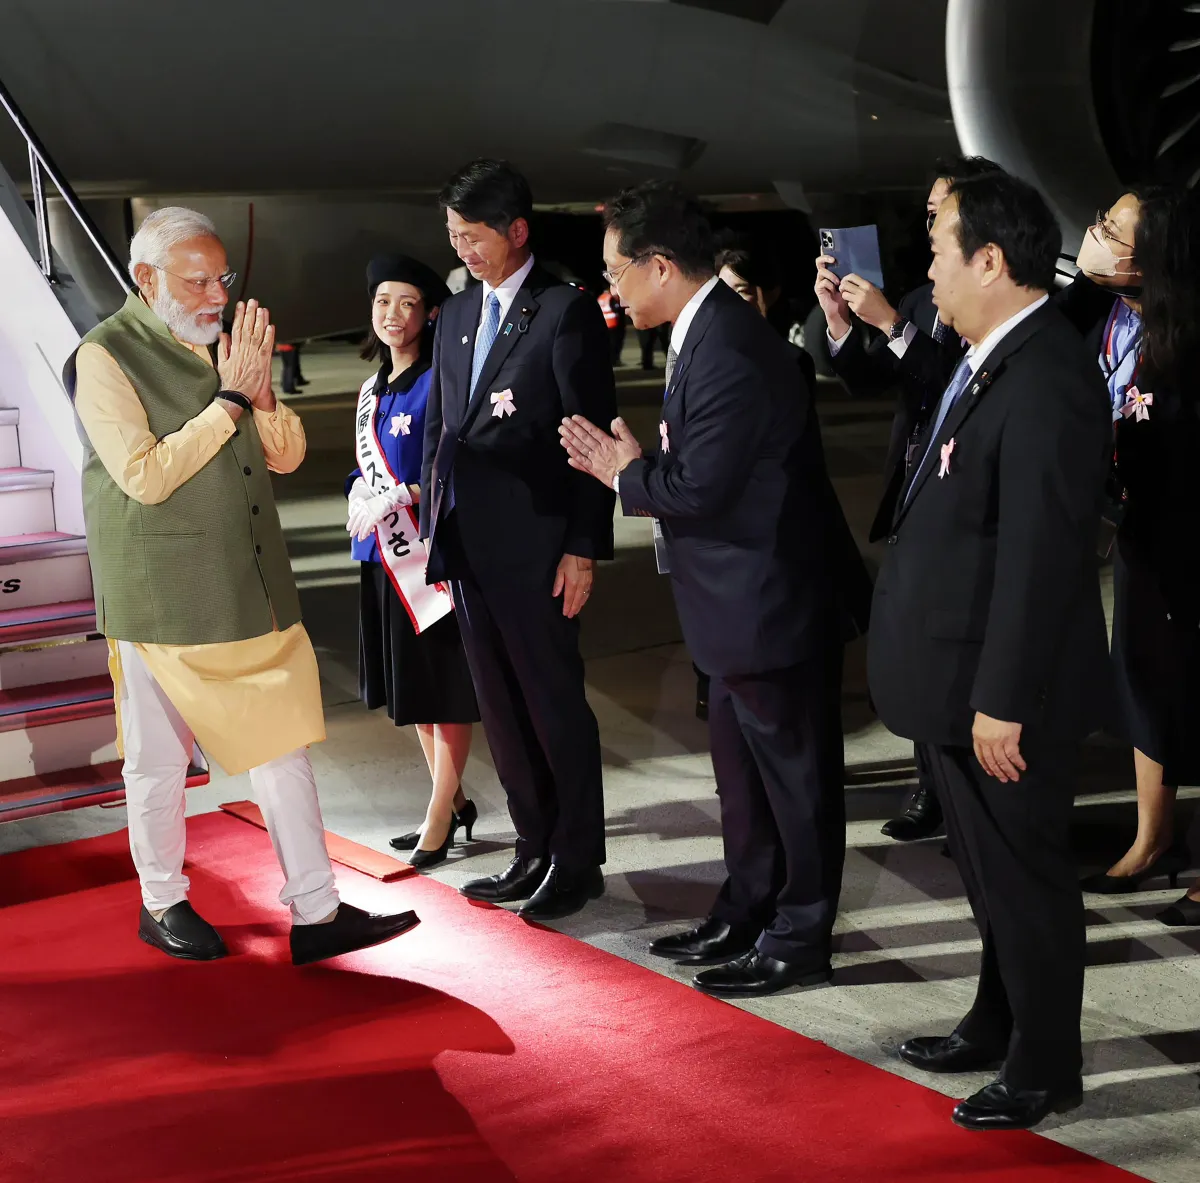 जी-7 में शामिल होने जापान पहुंचे पीएम मोदी- India TV Hindi